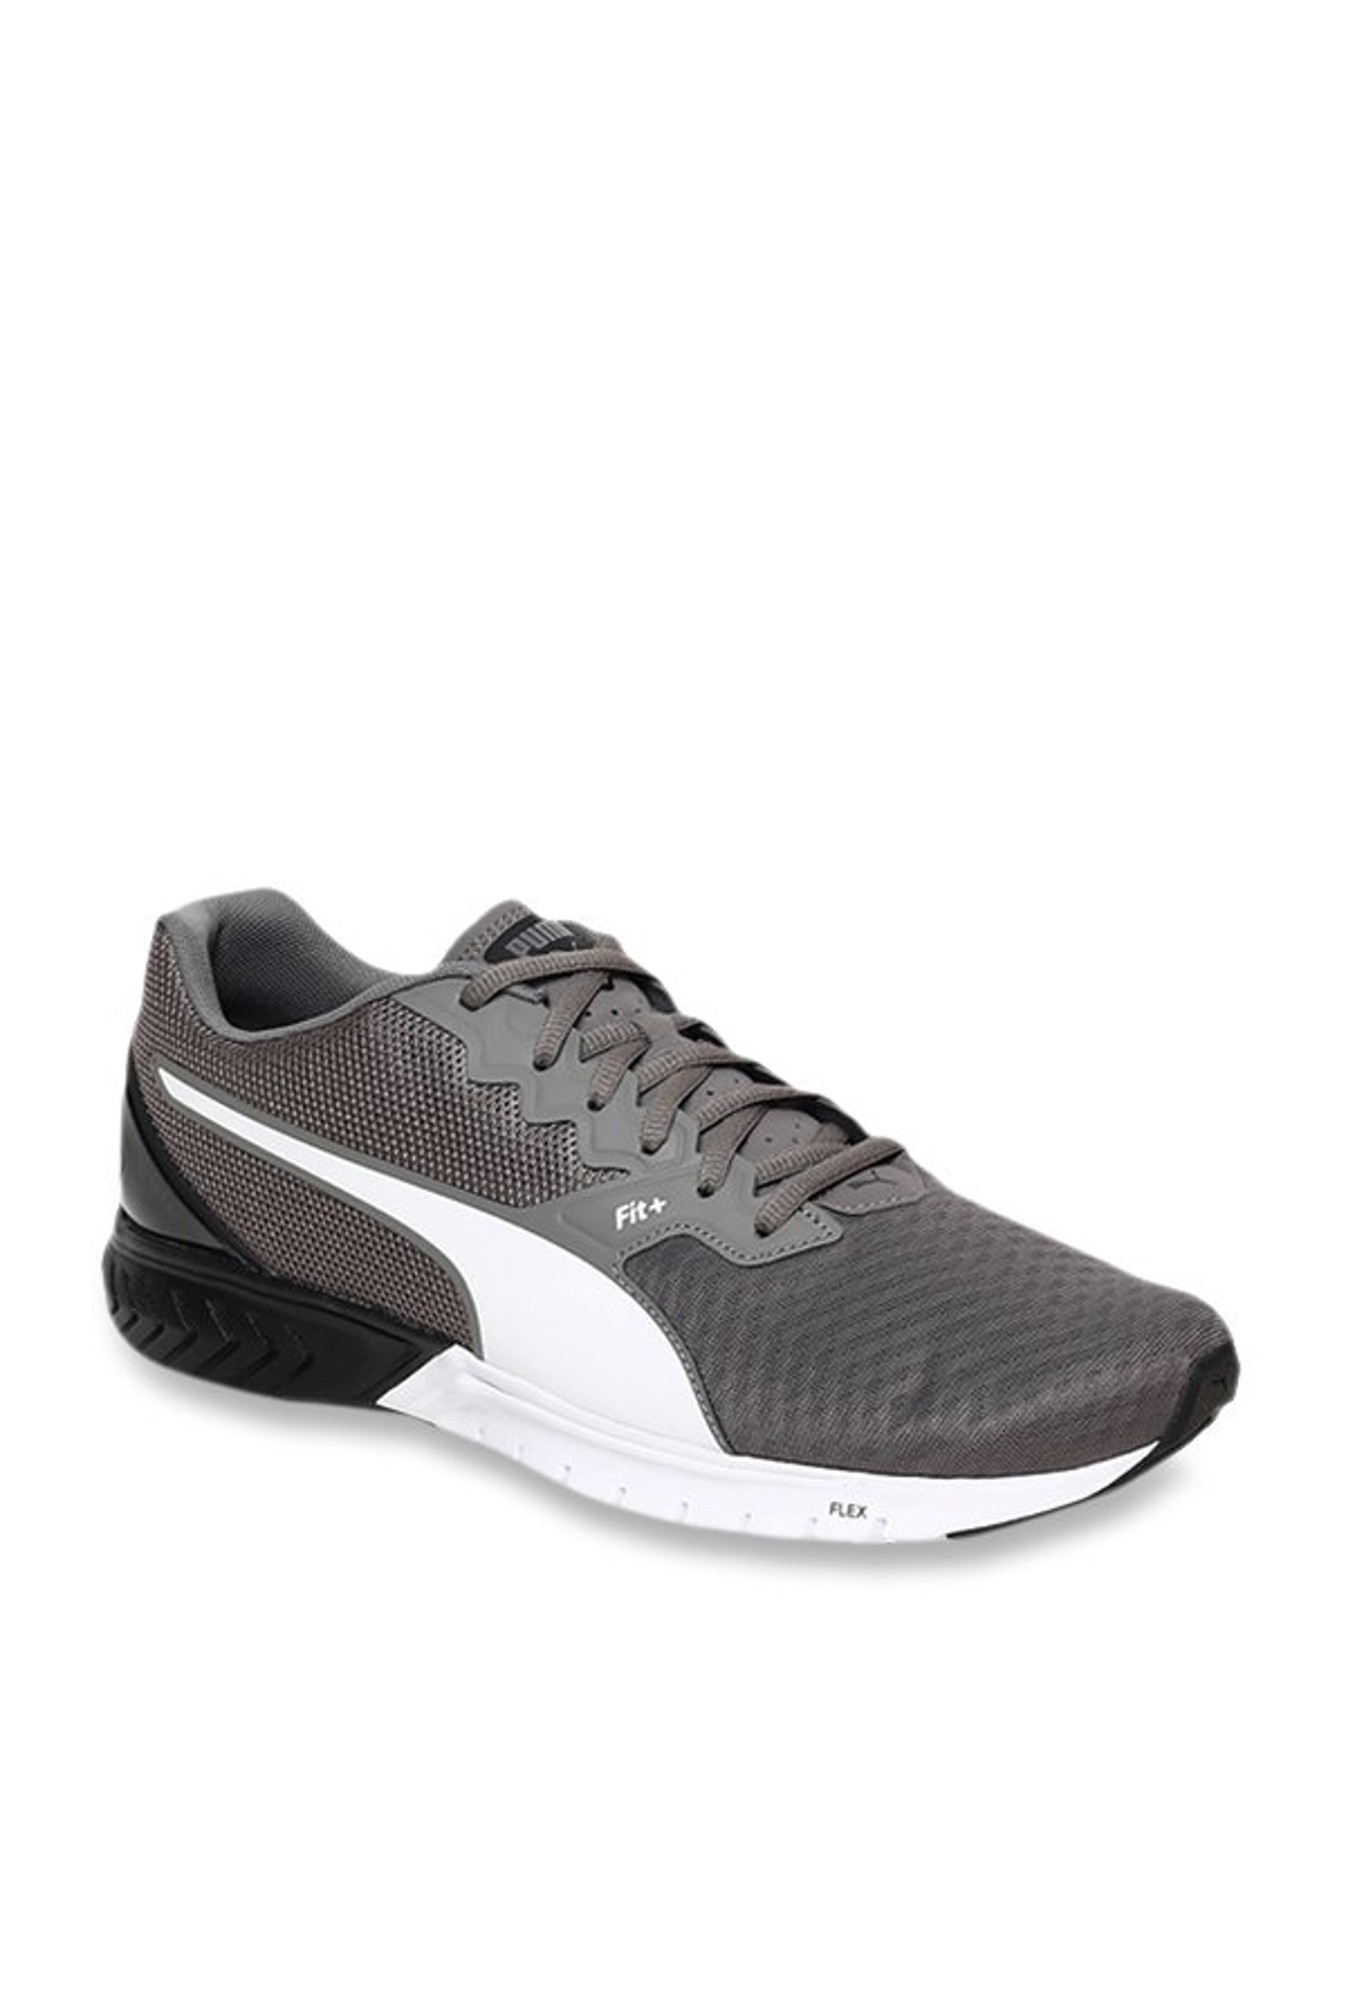 Puma Unisex Ignite Stride Charcoal Grey Running Shoes-Puma-Footwear ...